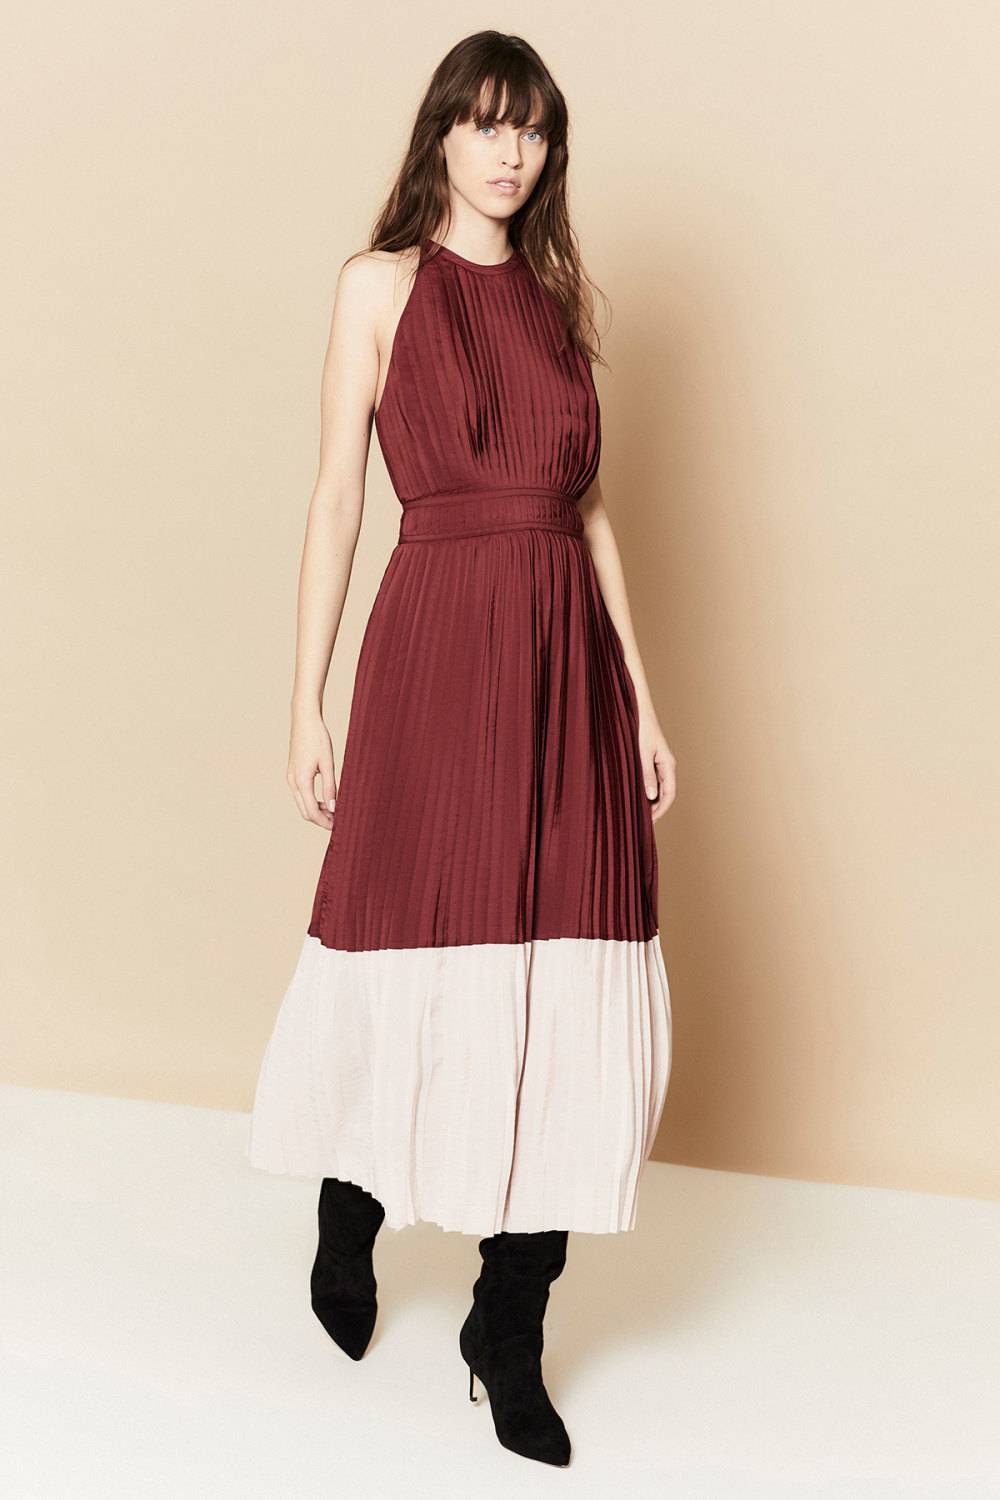 Joie时装系列漂亮的印花连衣裙和针织上衣进一步更新了外观-9.jpg